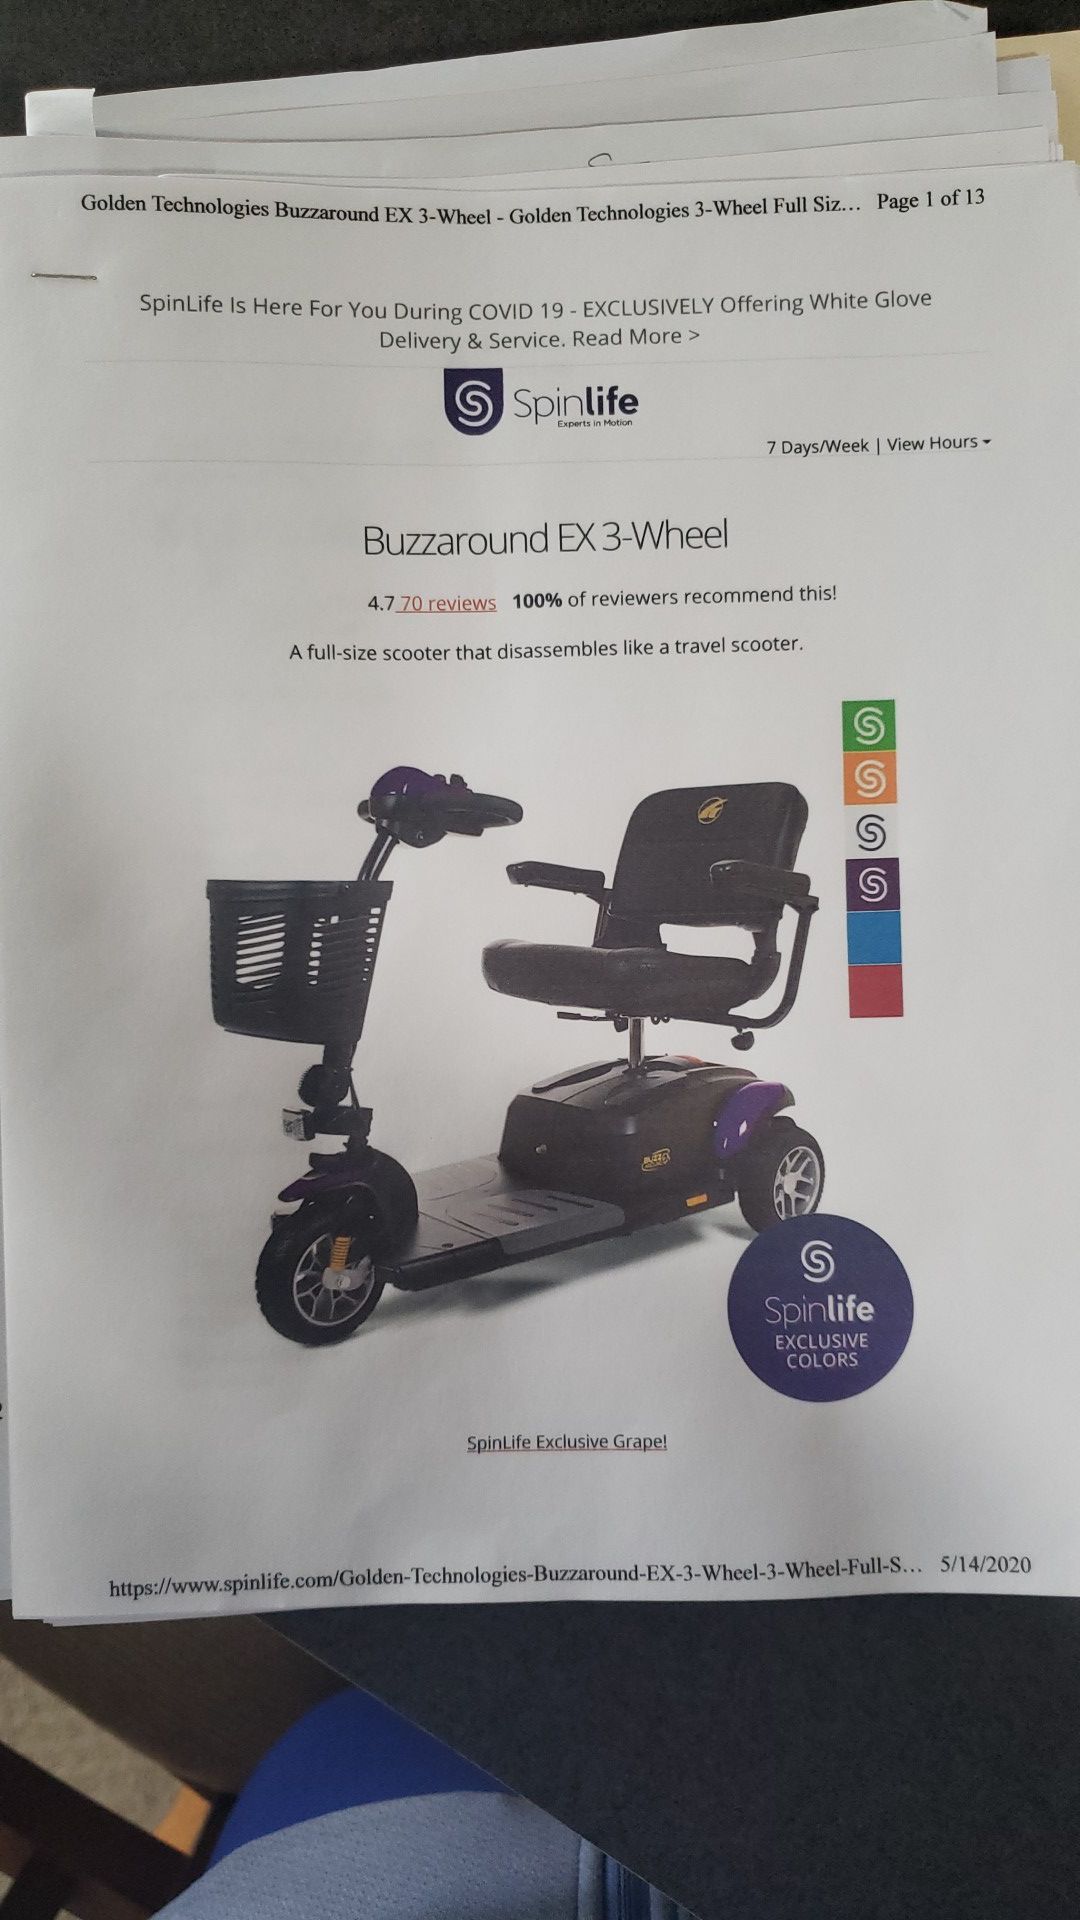 Buzz Around EX 3 wheel scooter